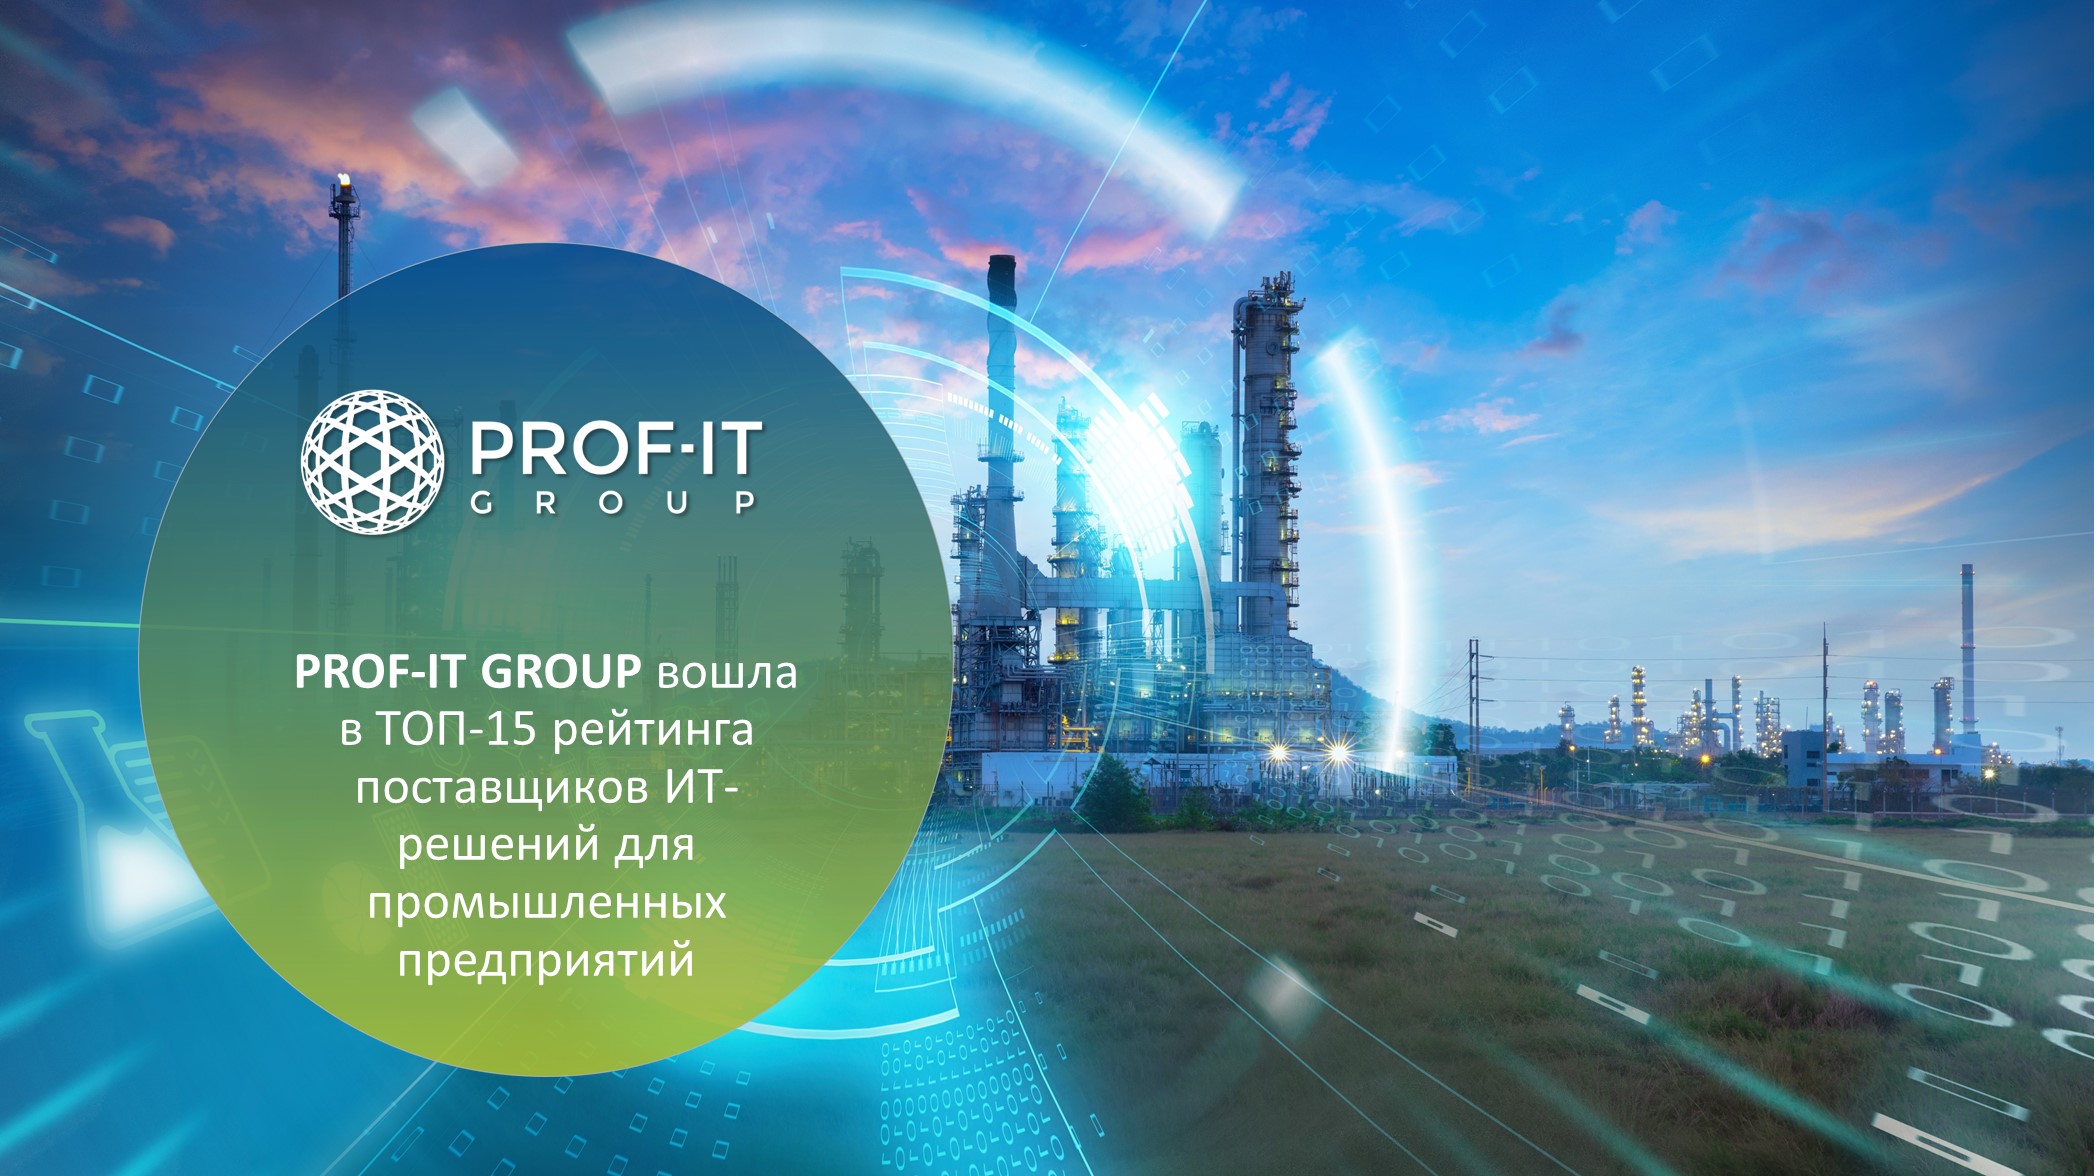 PROF-IT GROUP вошла в ТОП-15 поставщиков ИТ-решений для промышленных предприятий